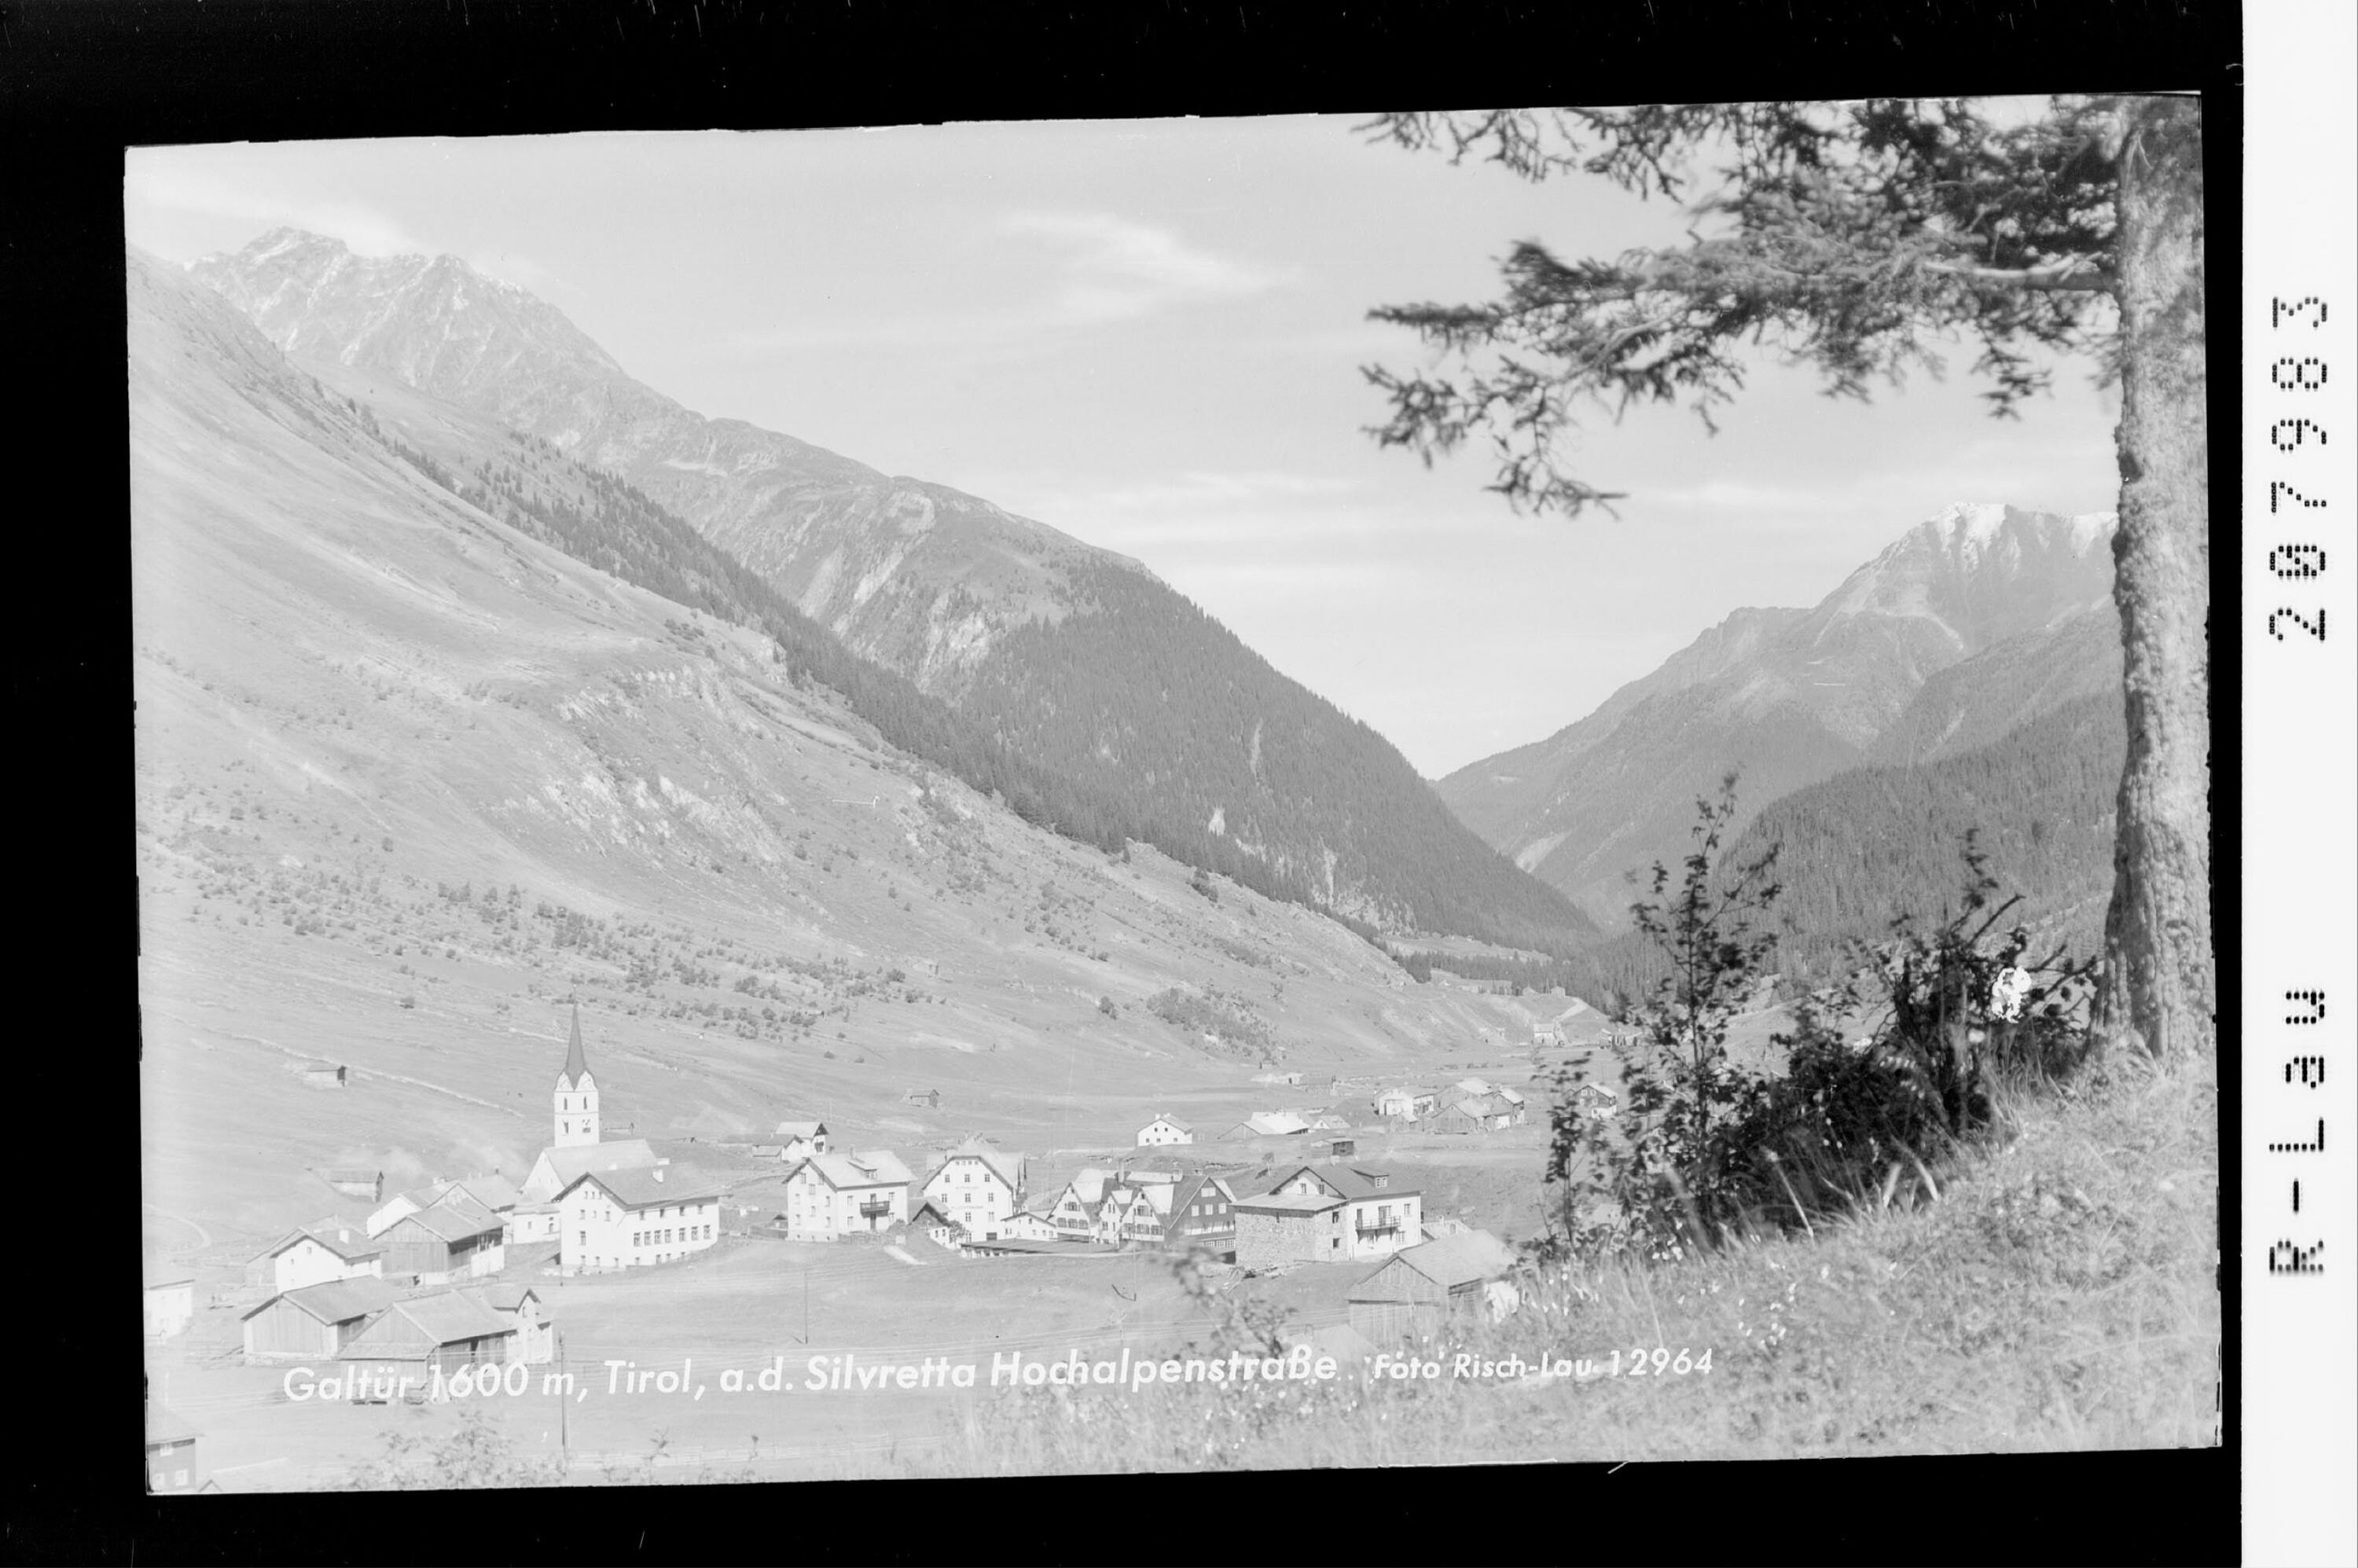 Galtür 1600 m in Tirol an der Silvretta Hochalpenstrasse></div>


    <hr>
    <div class=